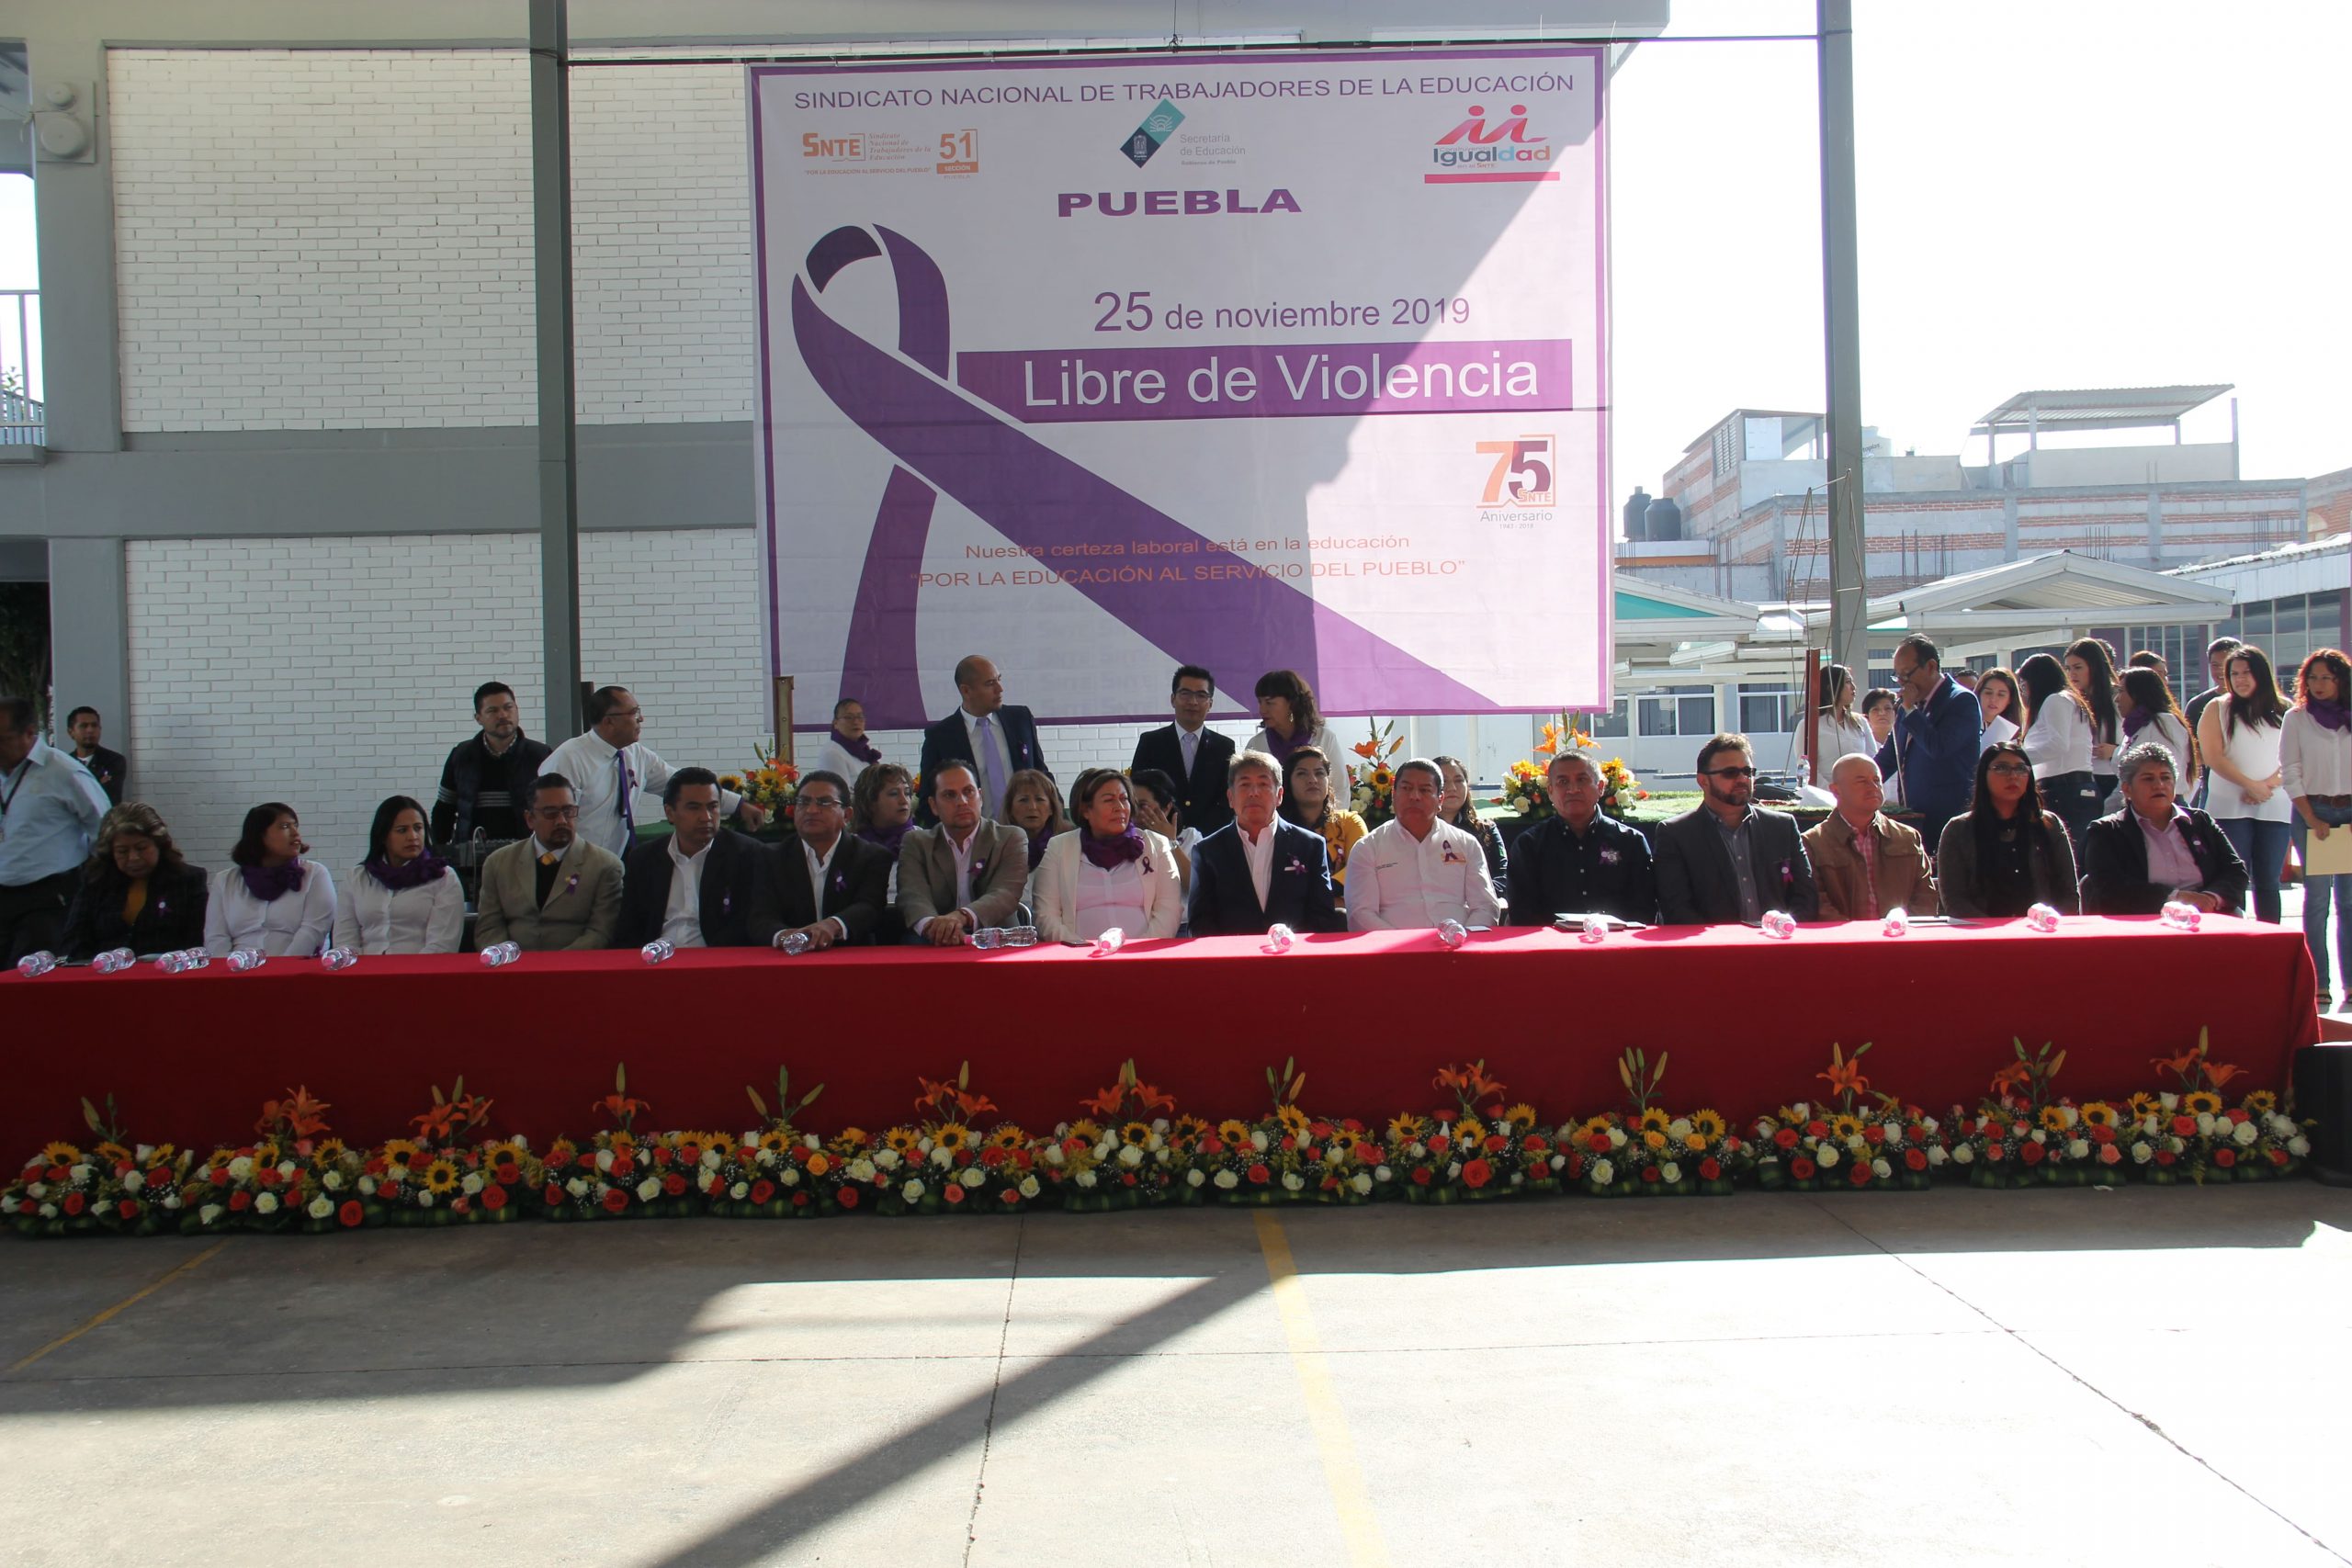 SNTE 51 Presente en la Ceremonia Cívica Inaugural del Programa de Pláticas y Capacitación para Prevenir la Violencia en contra de las Mujeres, Niños y Jóvenes. “Puebla Libre de Violencia”